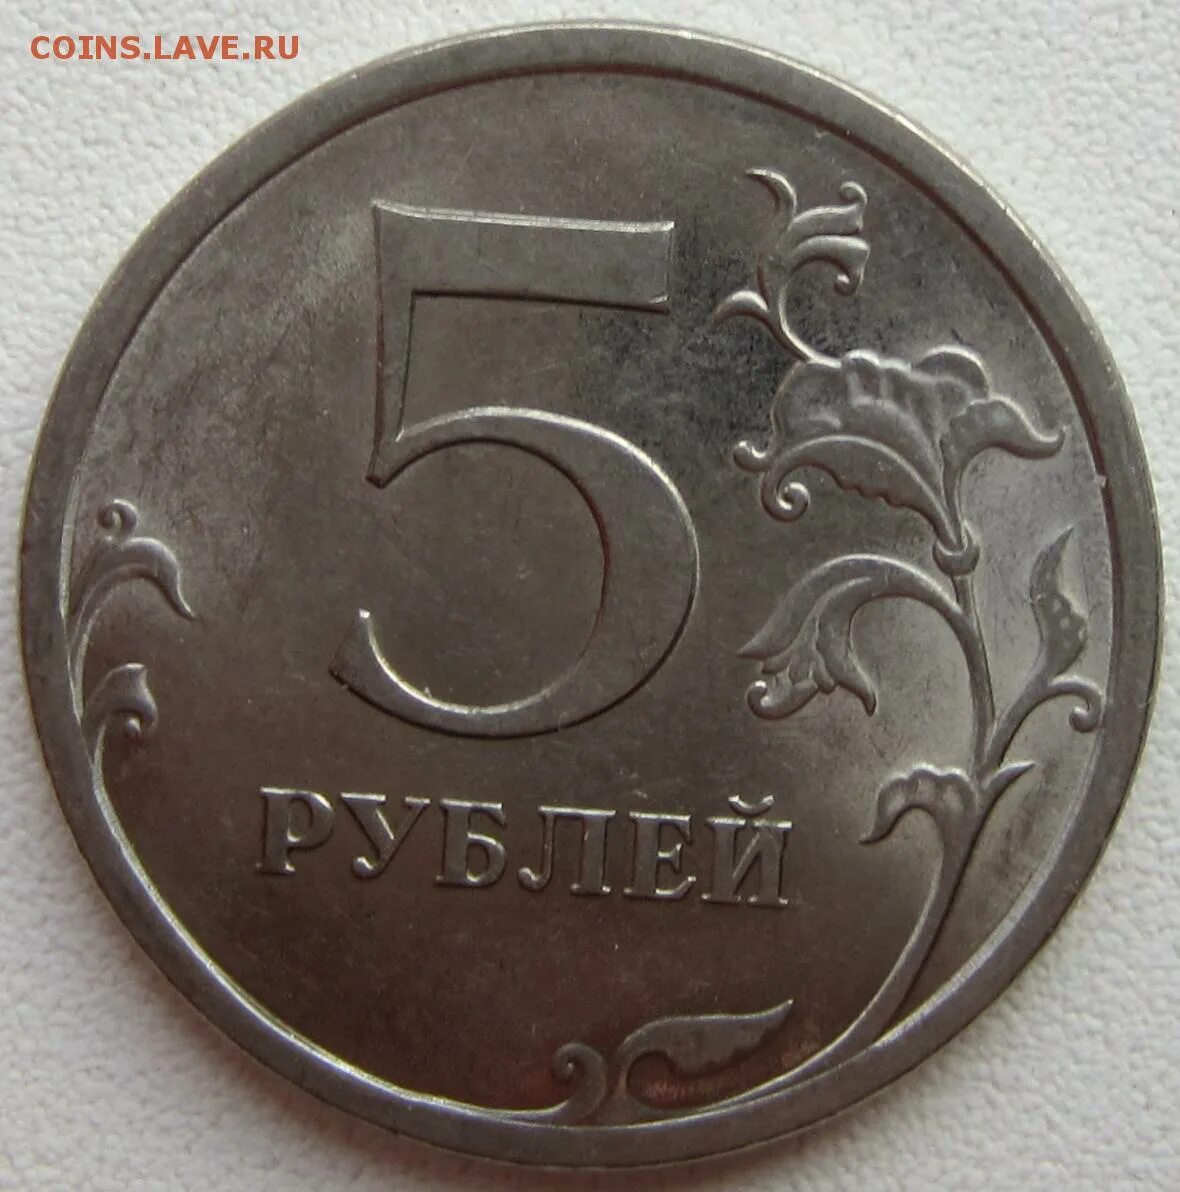 5 Рублей 2018. Монеты из магнита. 37 5 рублей